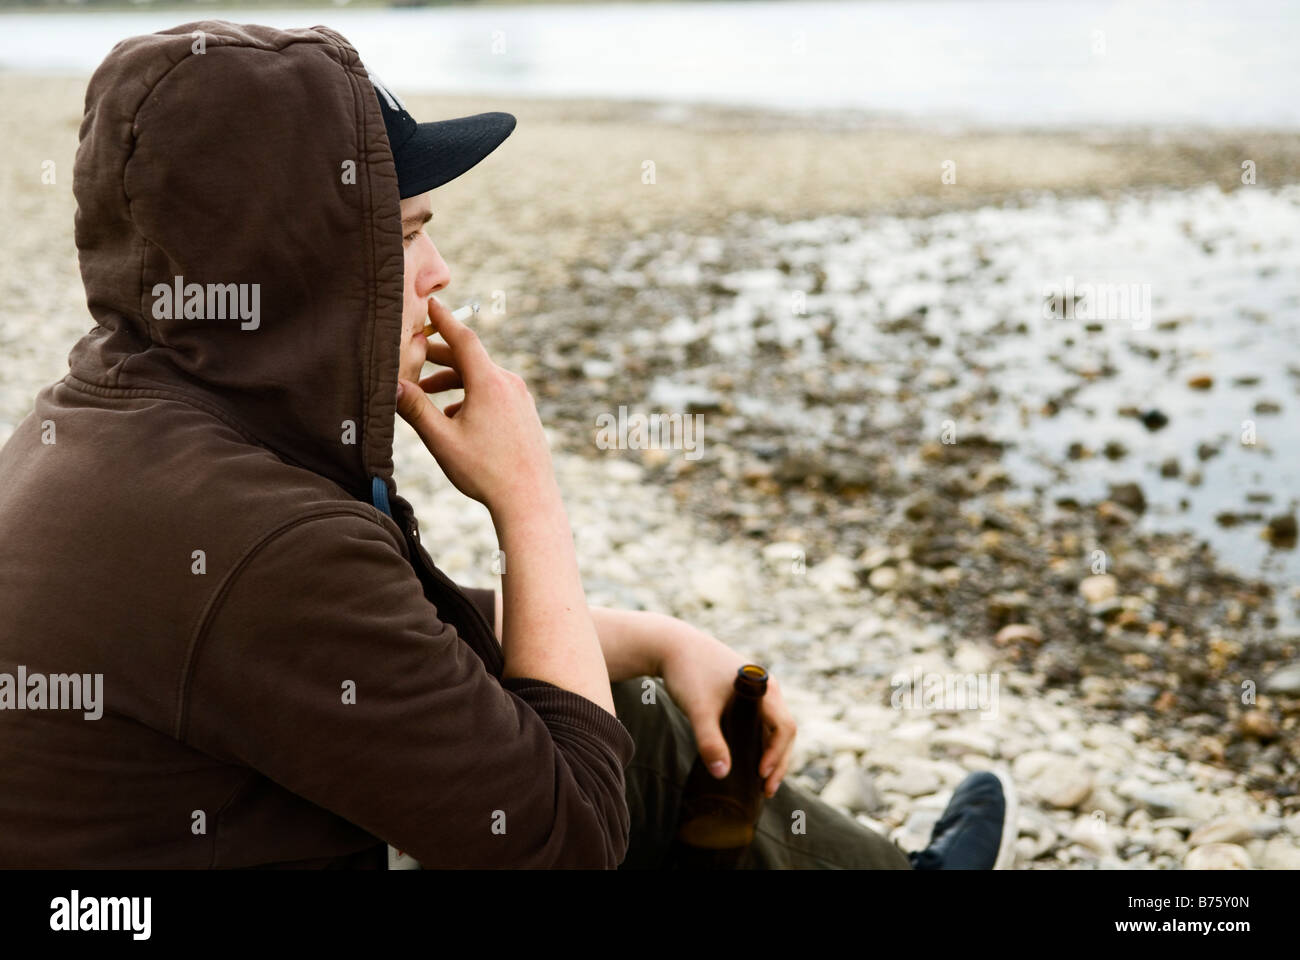 einsame junge sitzt am Ufer und Bier aus einer Flasche trinkt und raucht eine Zigarette Stockfoto